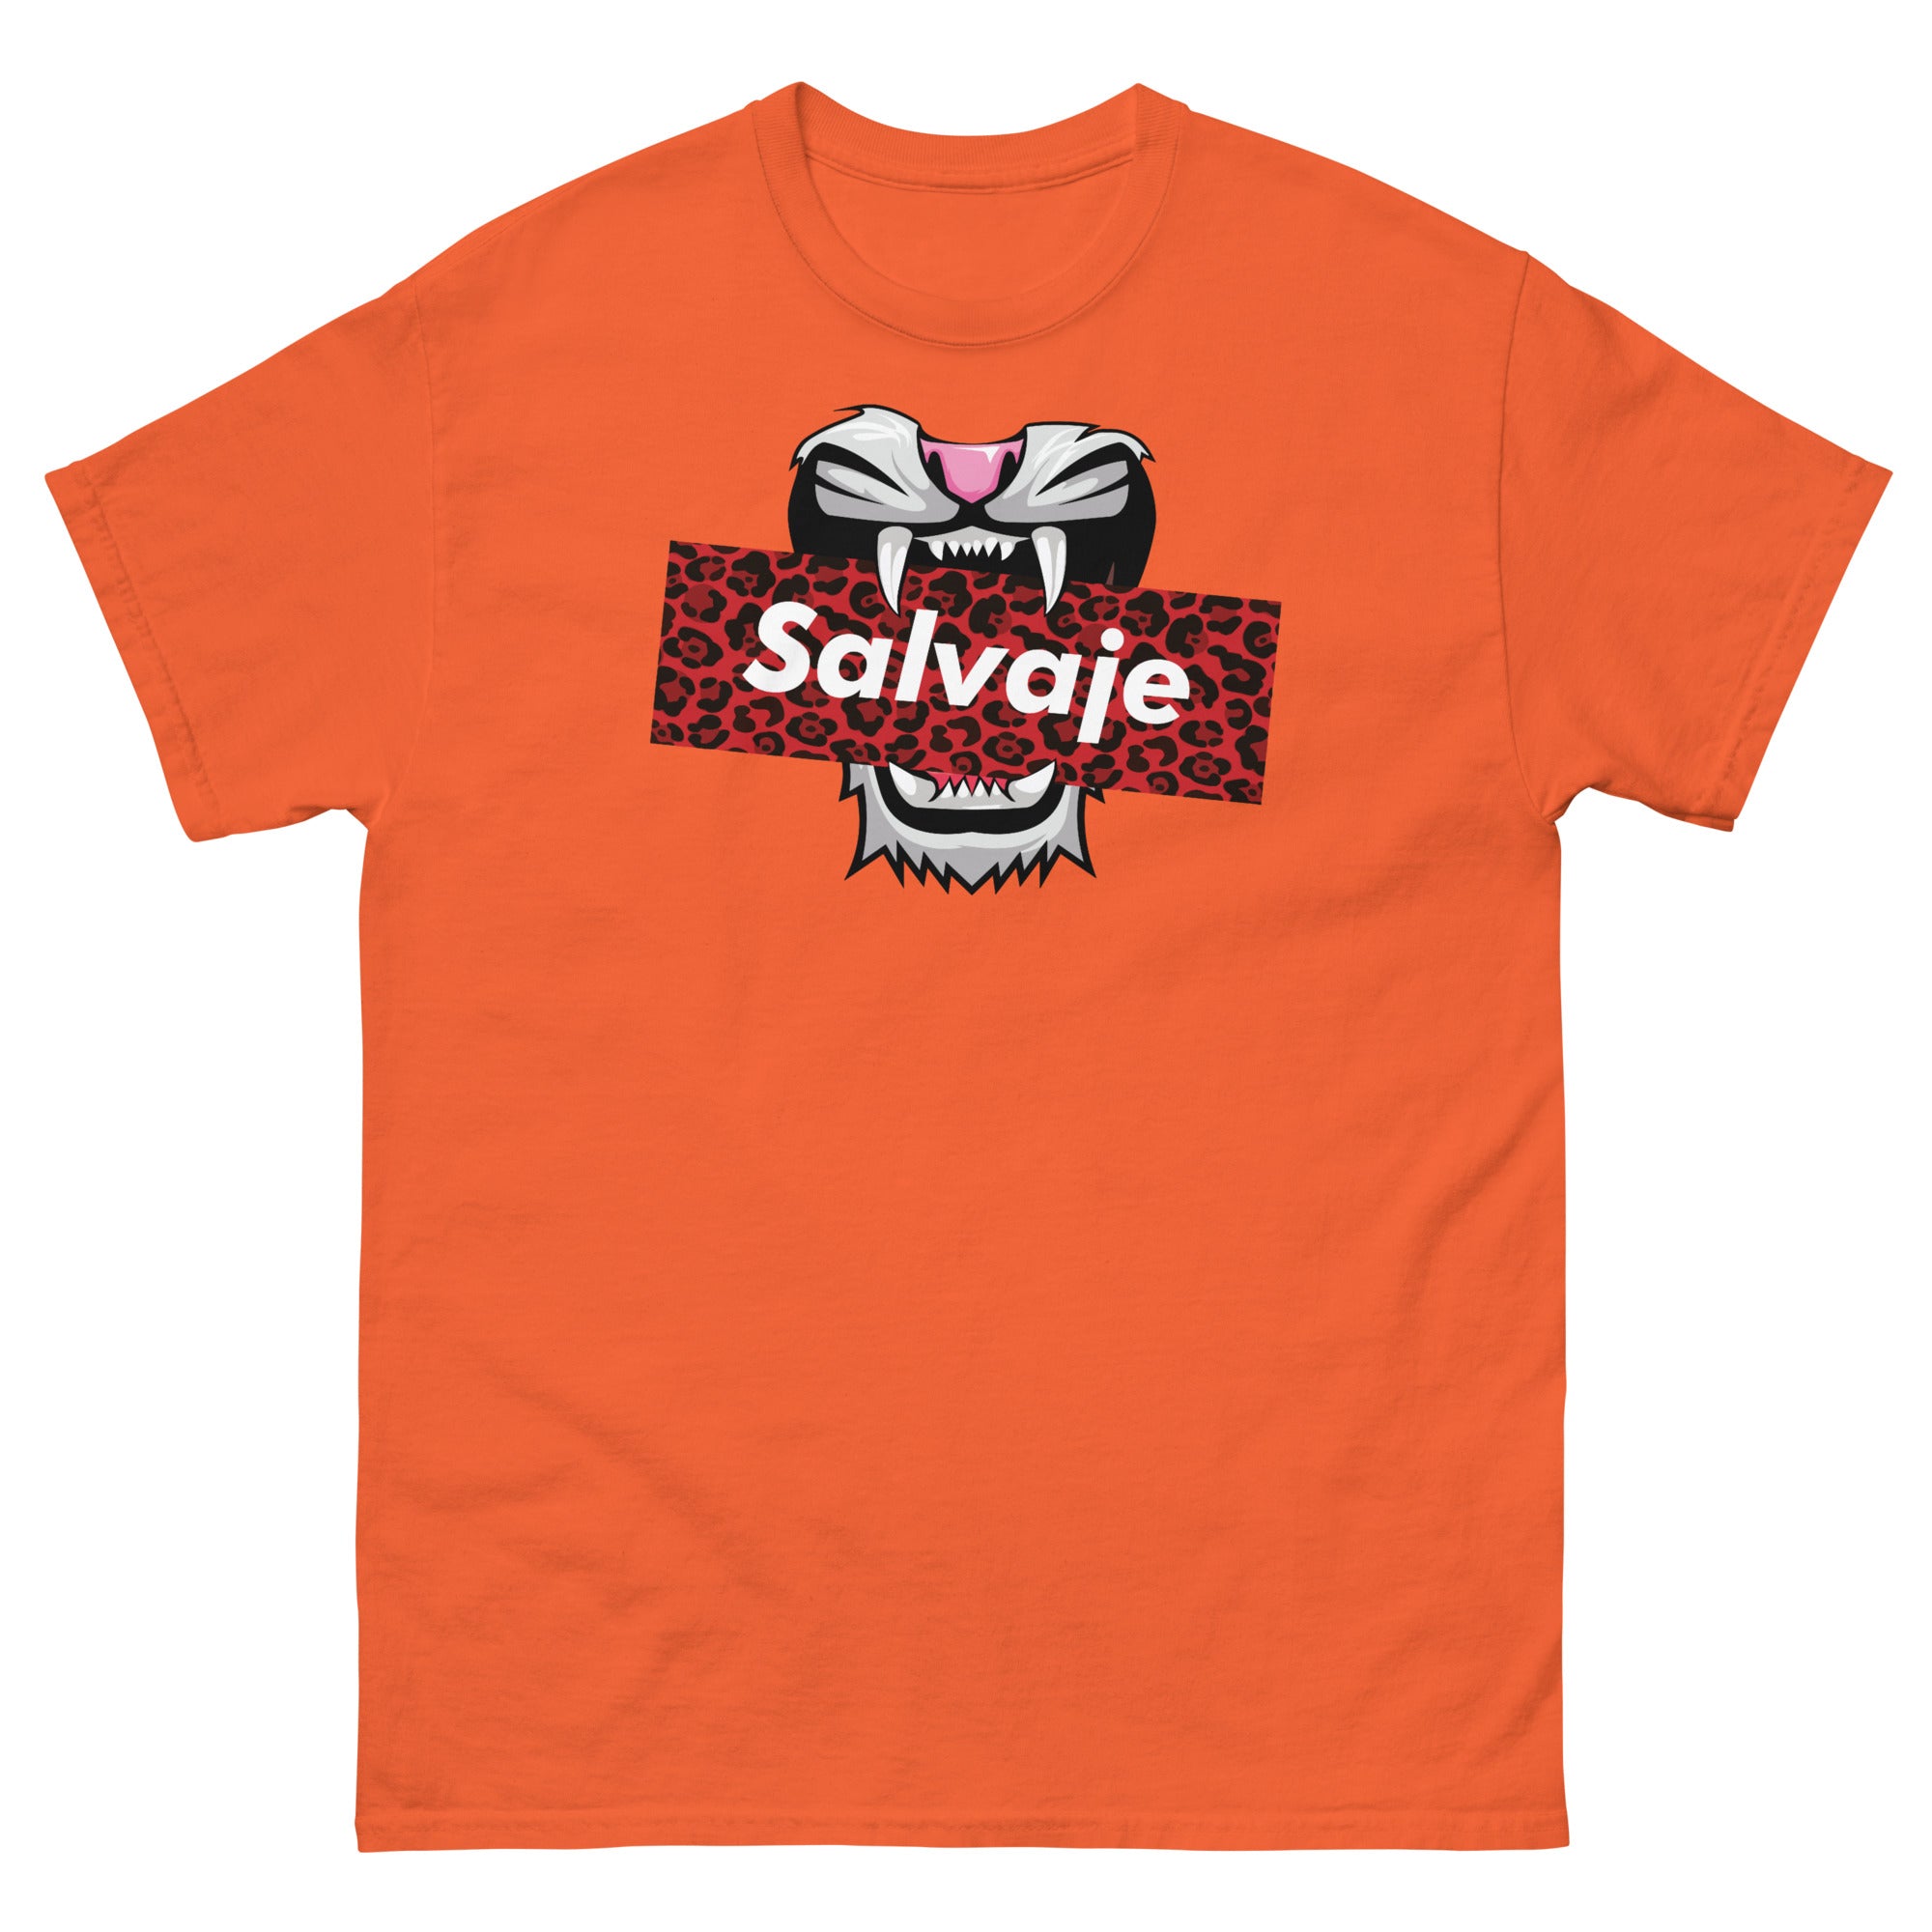 SALVAJE - Men's T-shirt